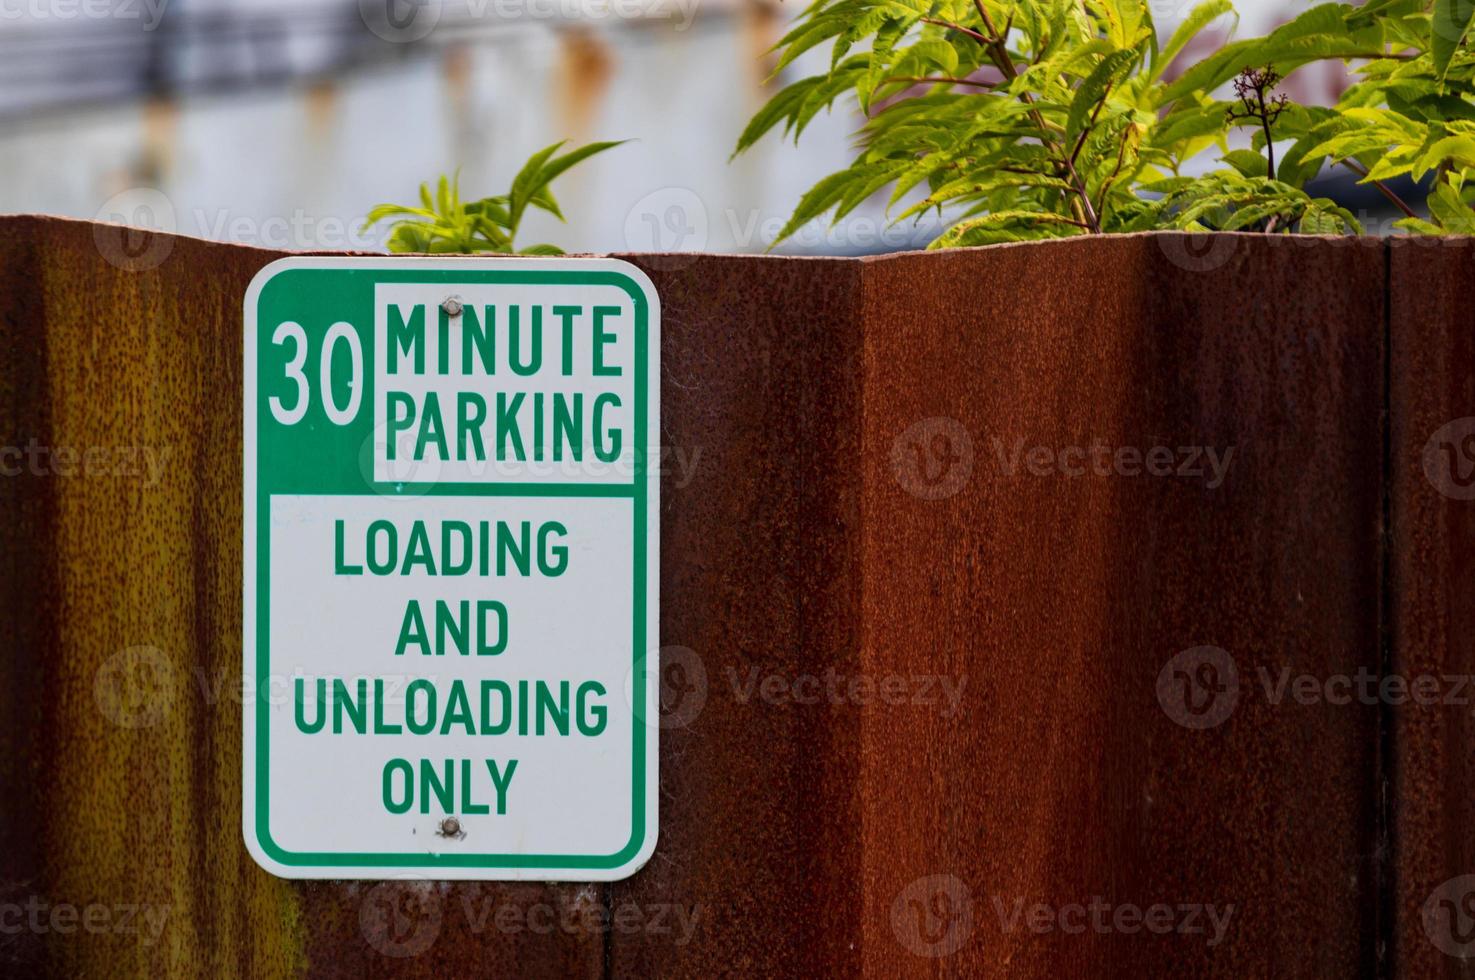 gammal urblekt bärs metall 30 minut parkering tecken med grön text foto